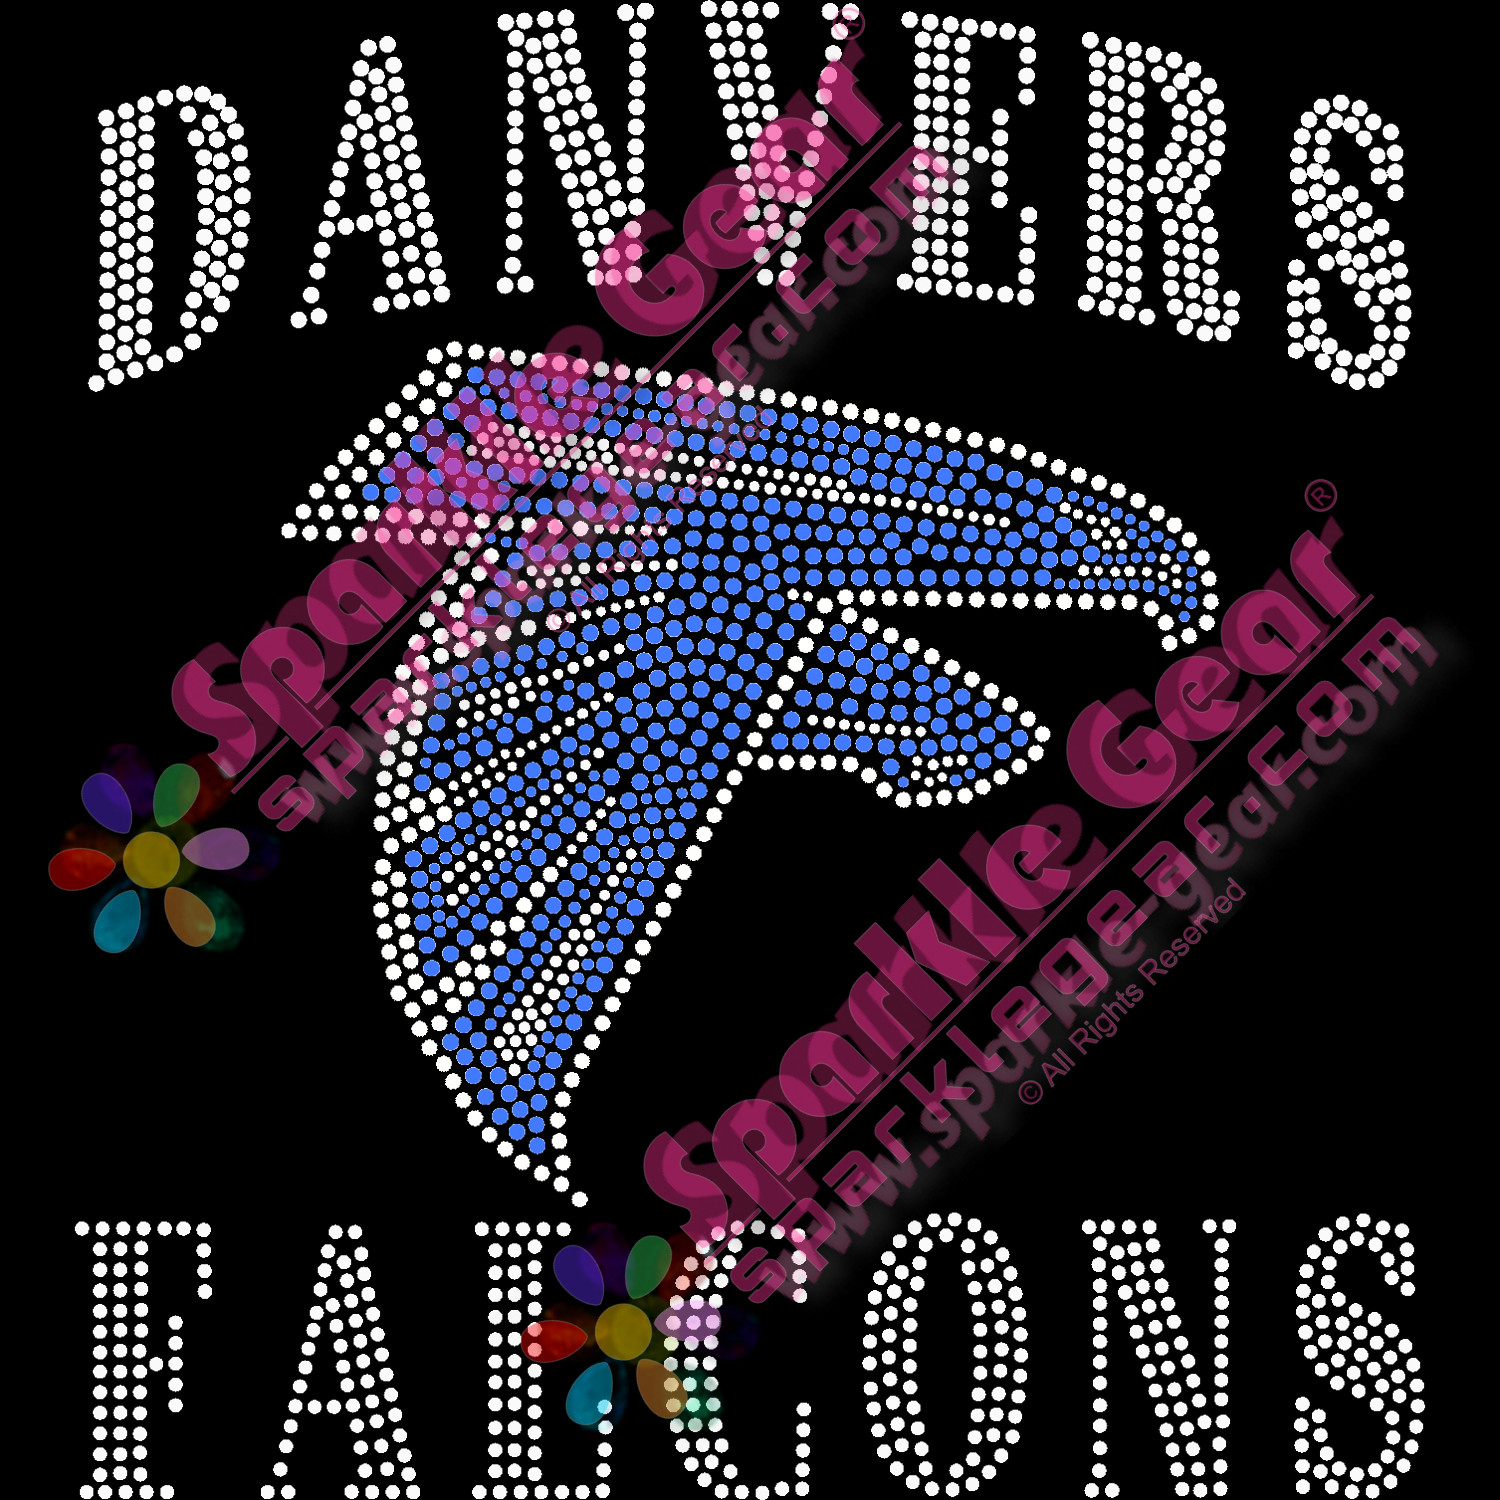 Danvers